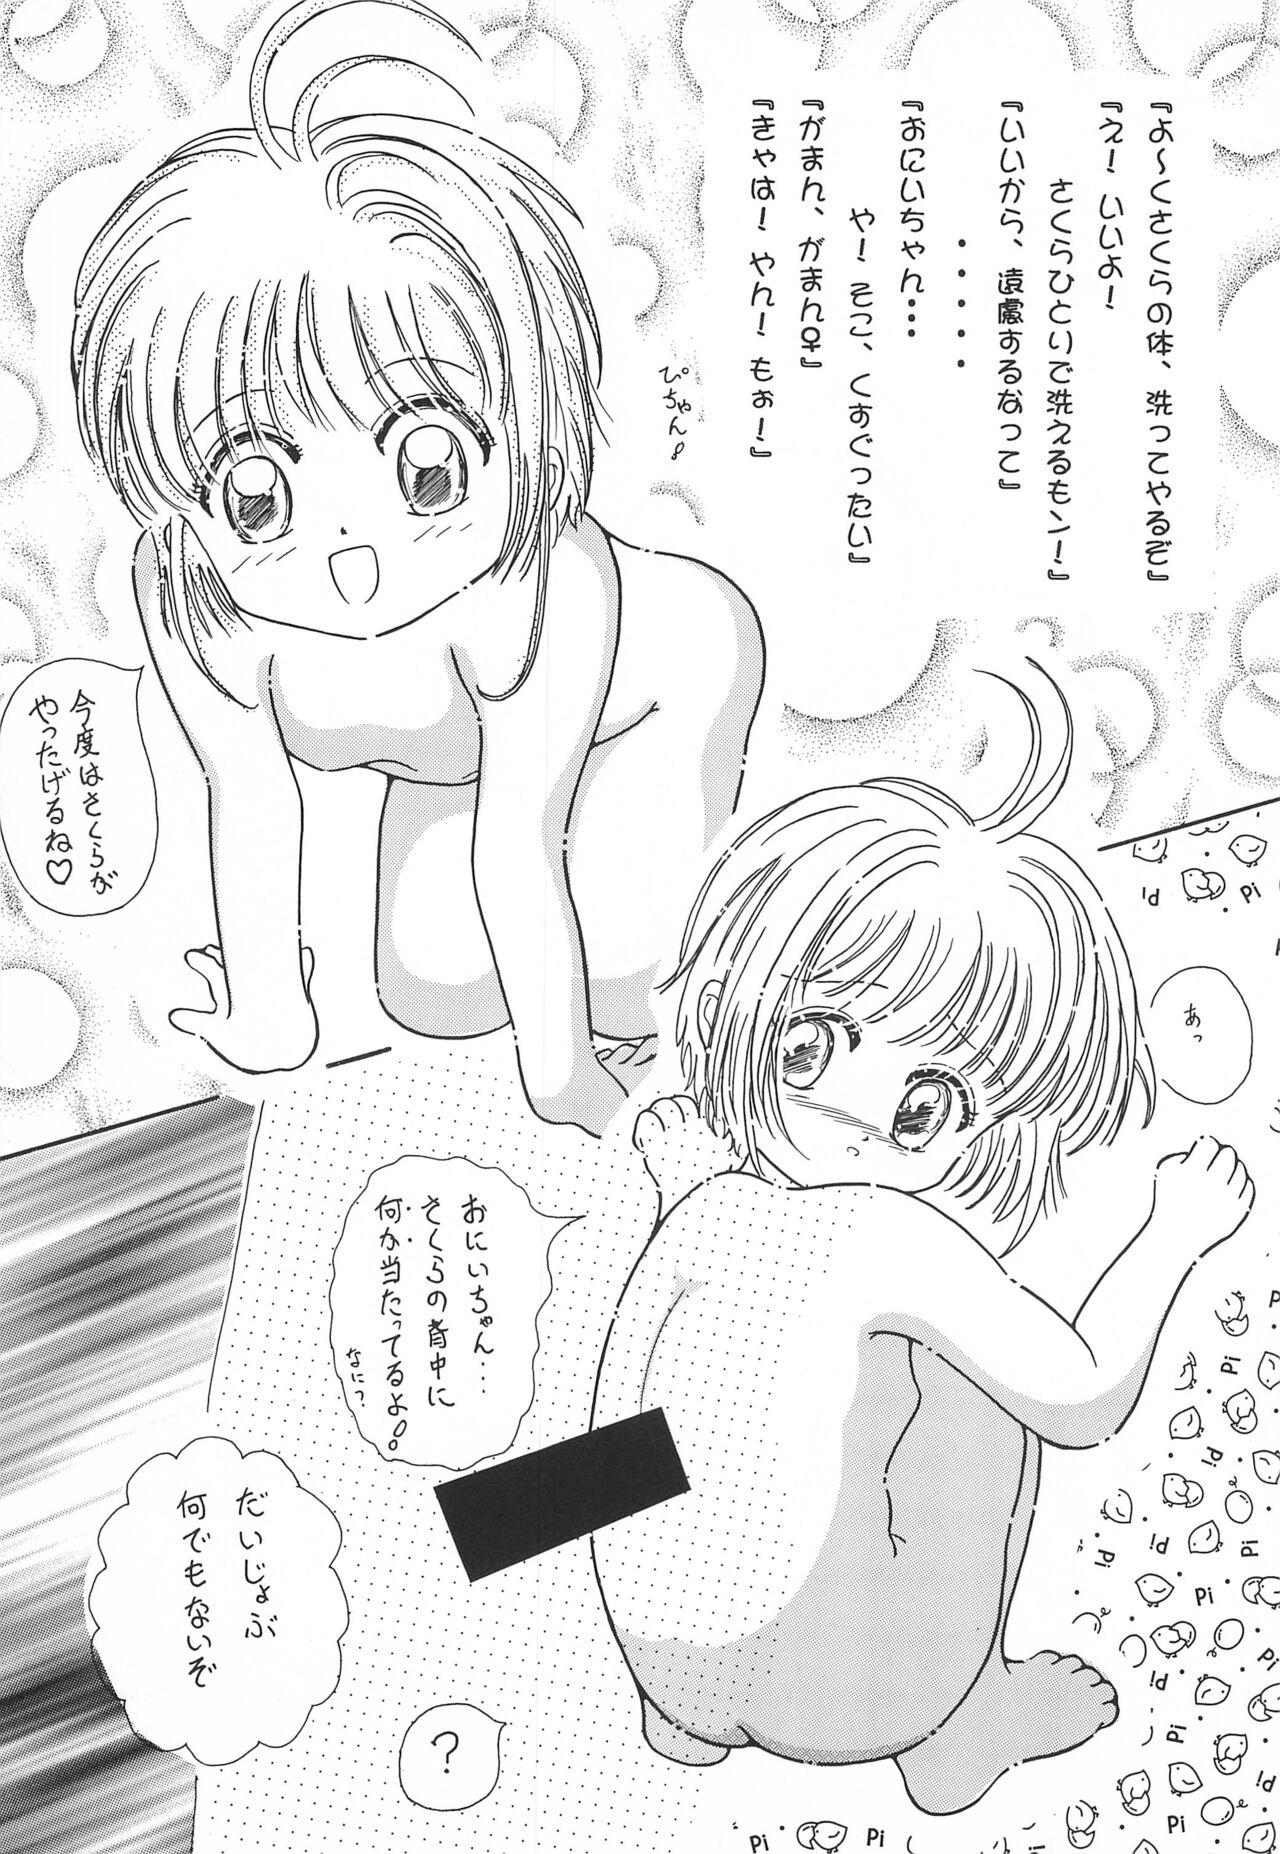 Eating Onna no ko da mon! - Cardcaptor sakura Cam Girl - Page 9